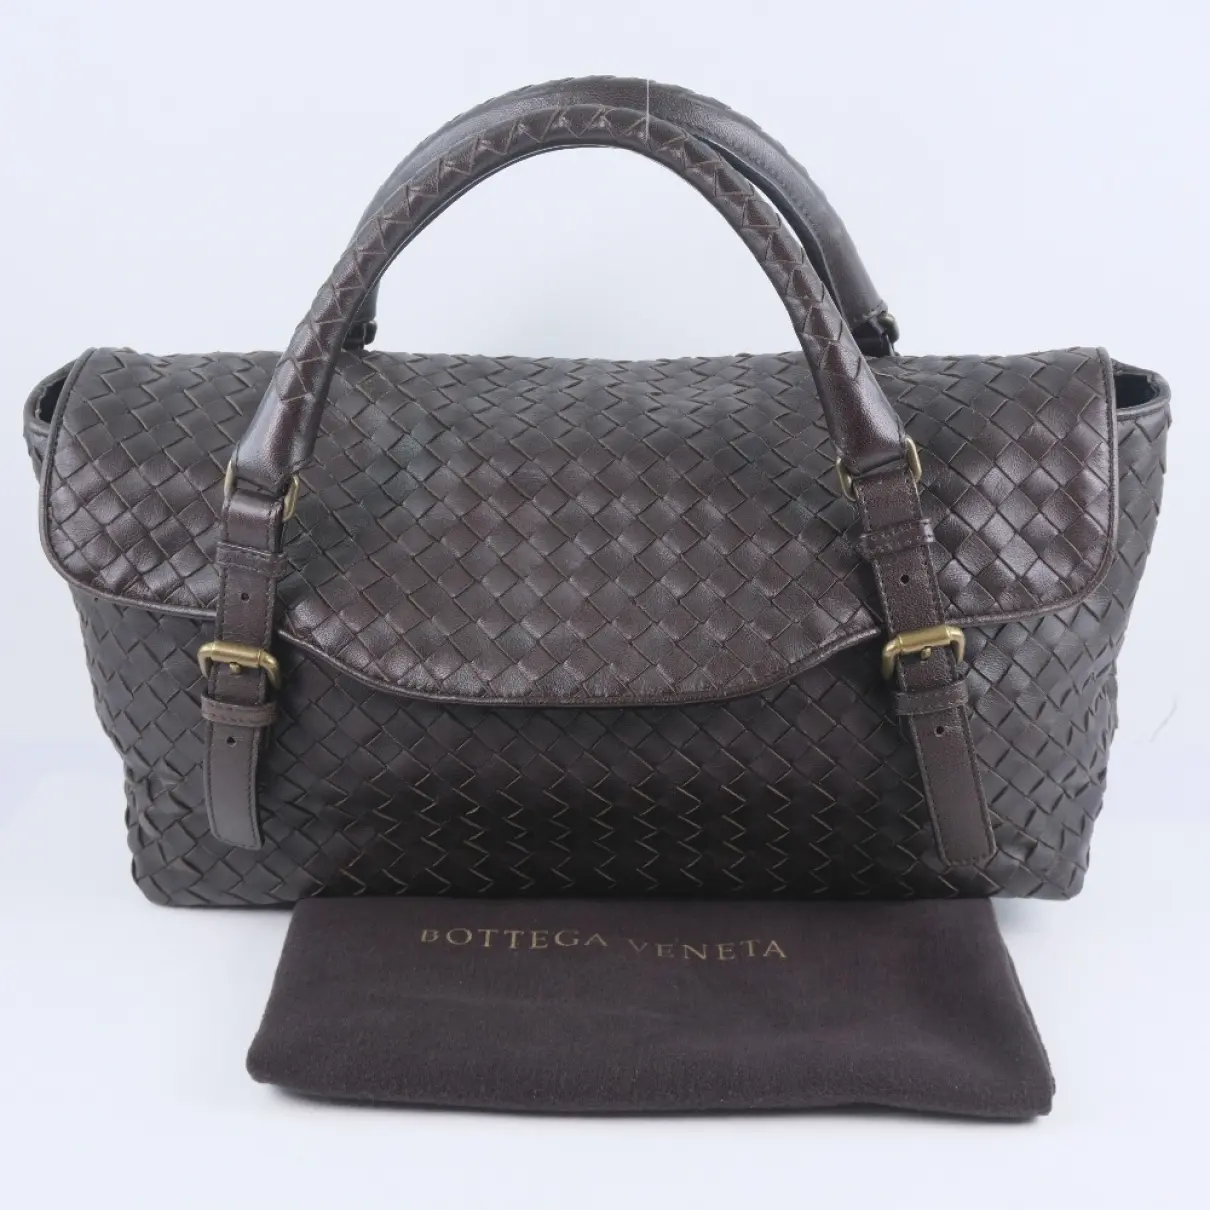 Intrecciato leather handbag Bottega Veneta